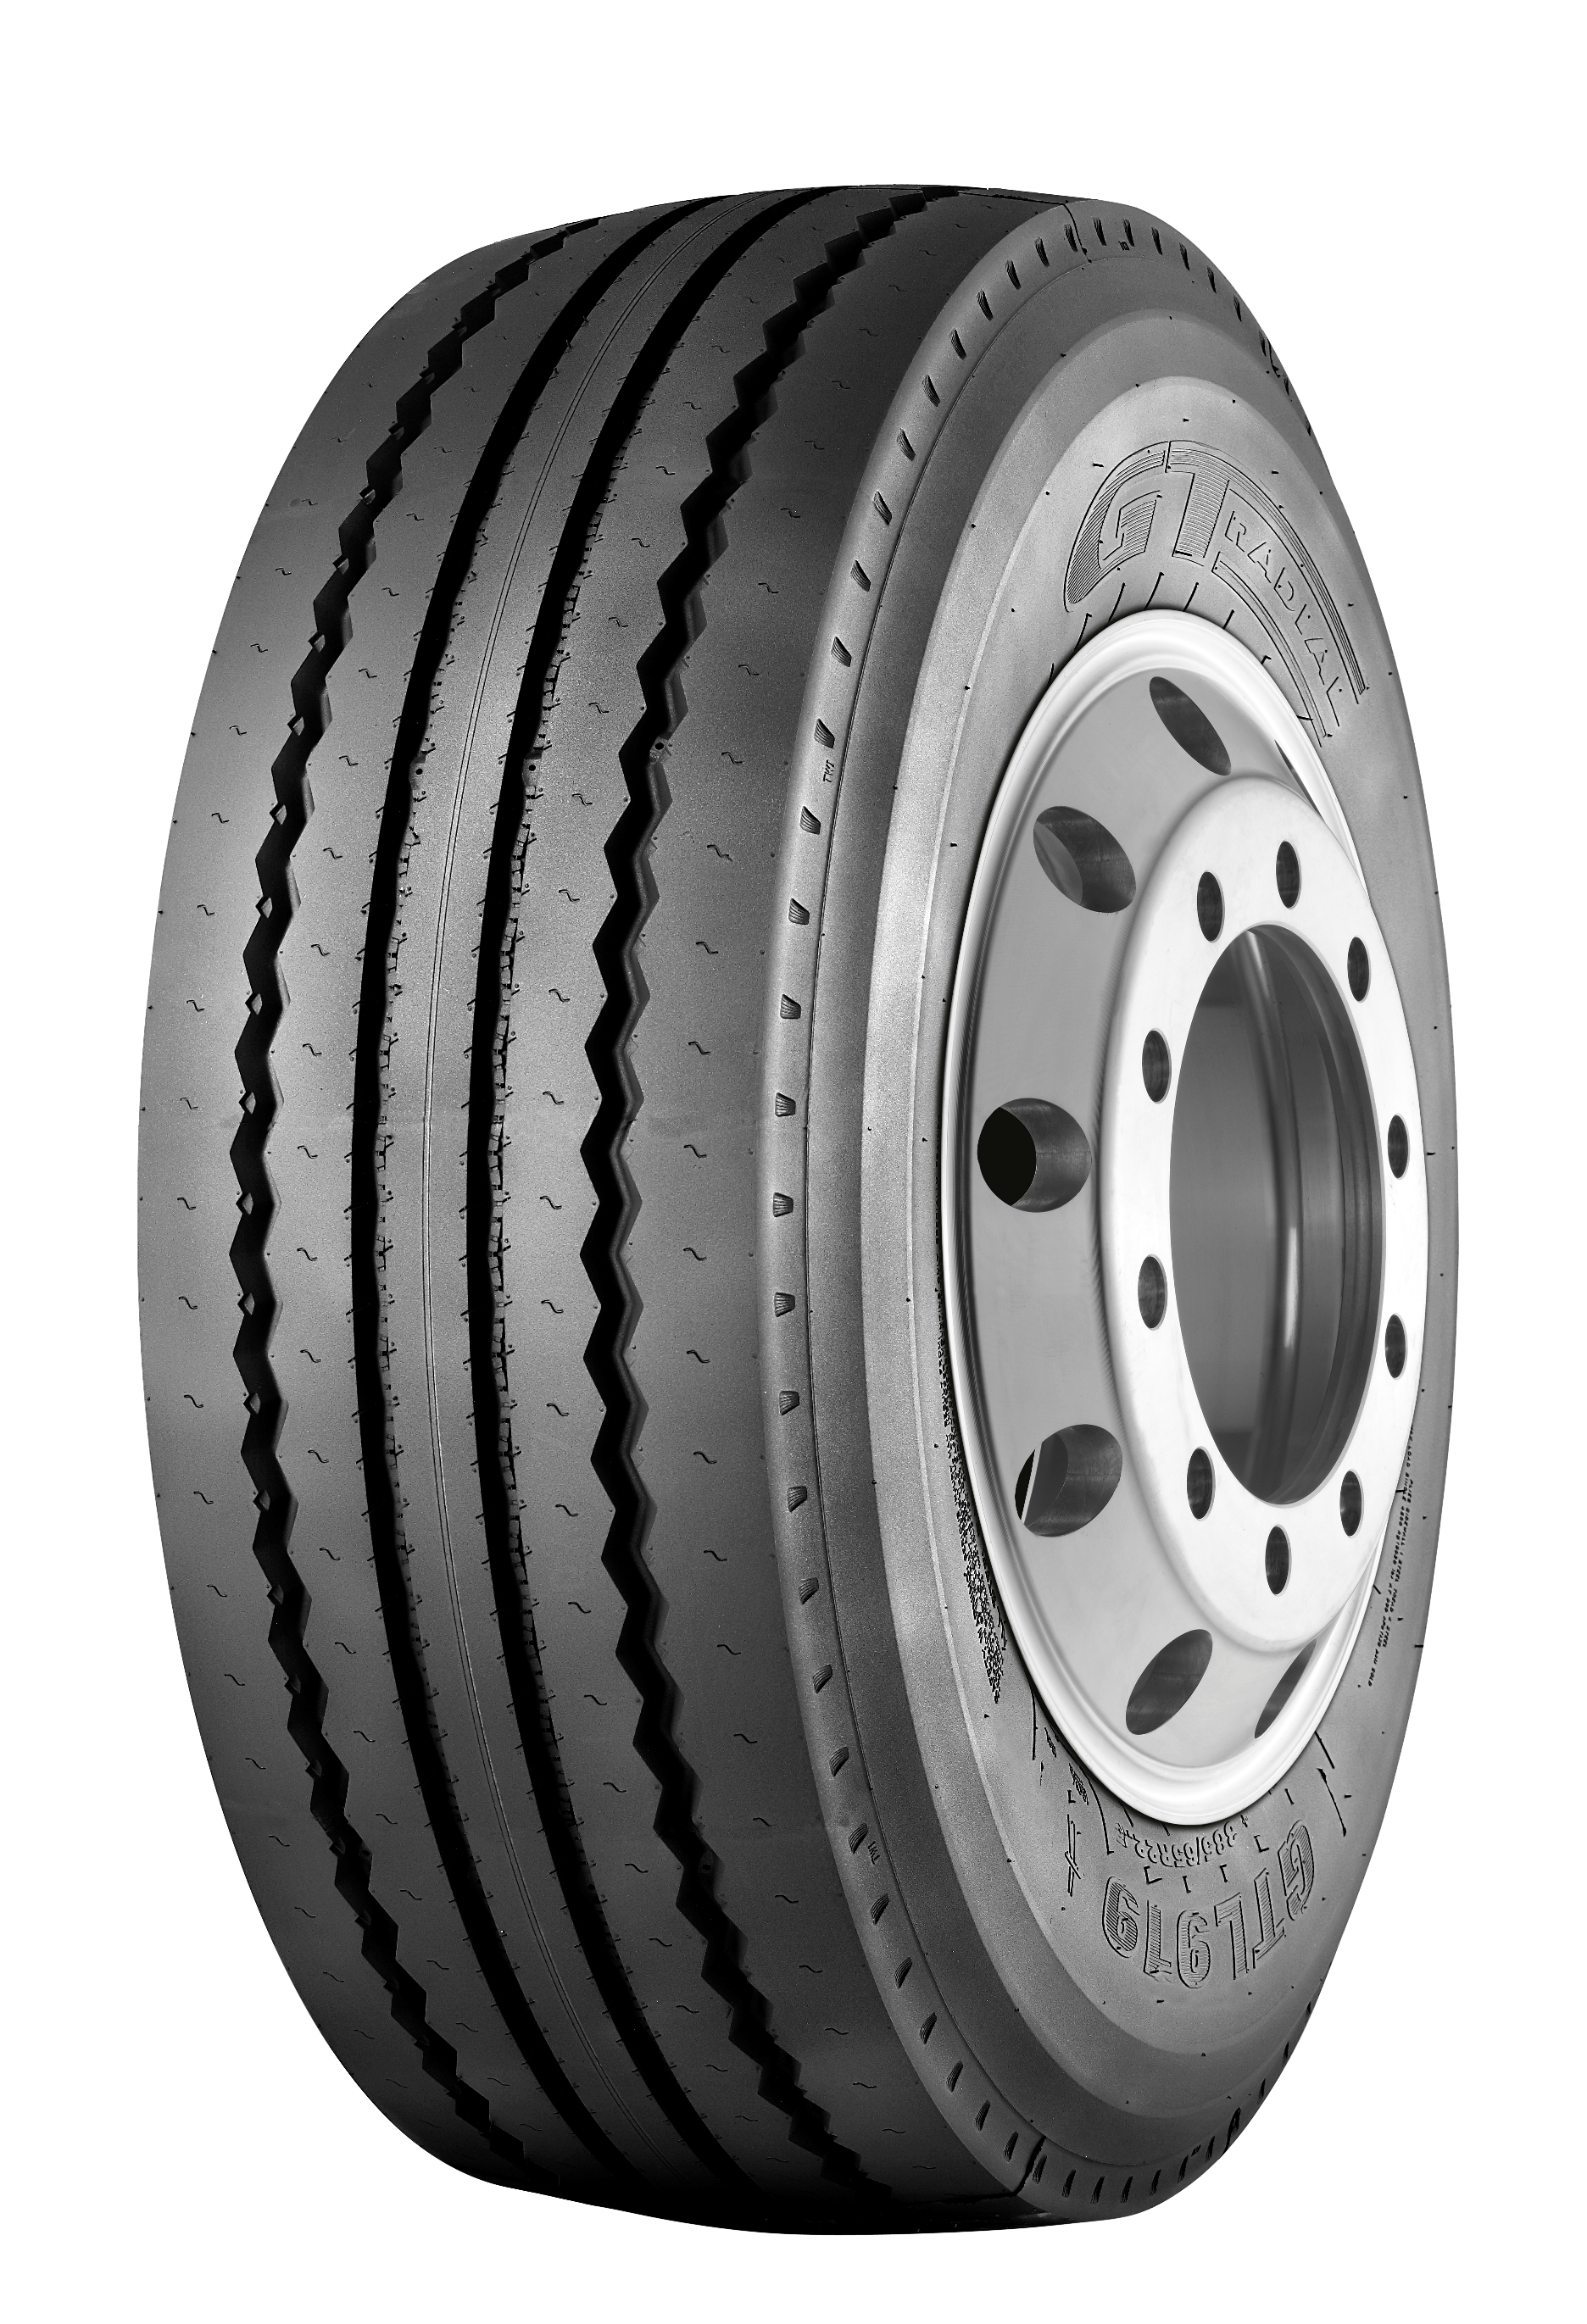 GT Radial release new long-haul trailer tyre